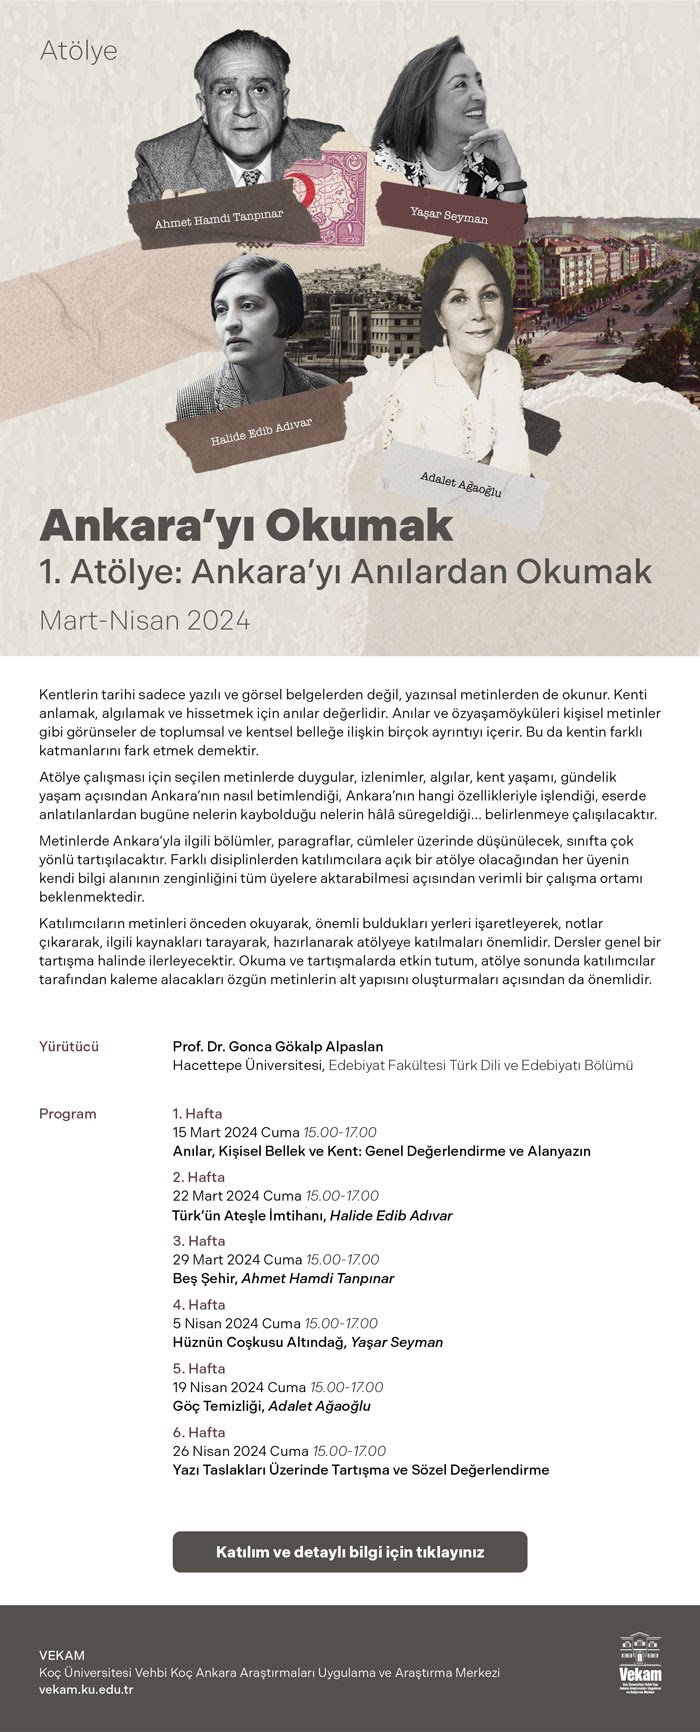 Atölye: Ankara'yı Anılardan Okumak